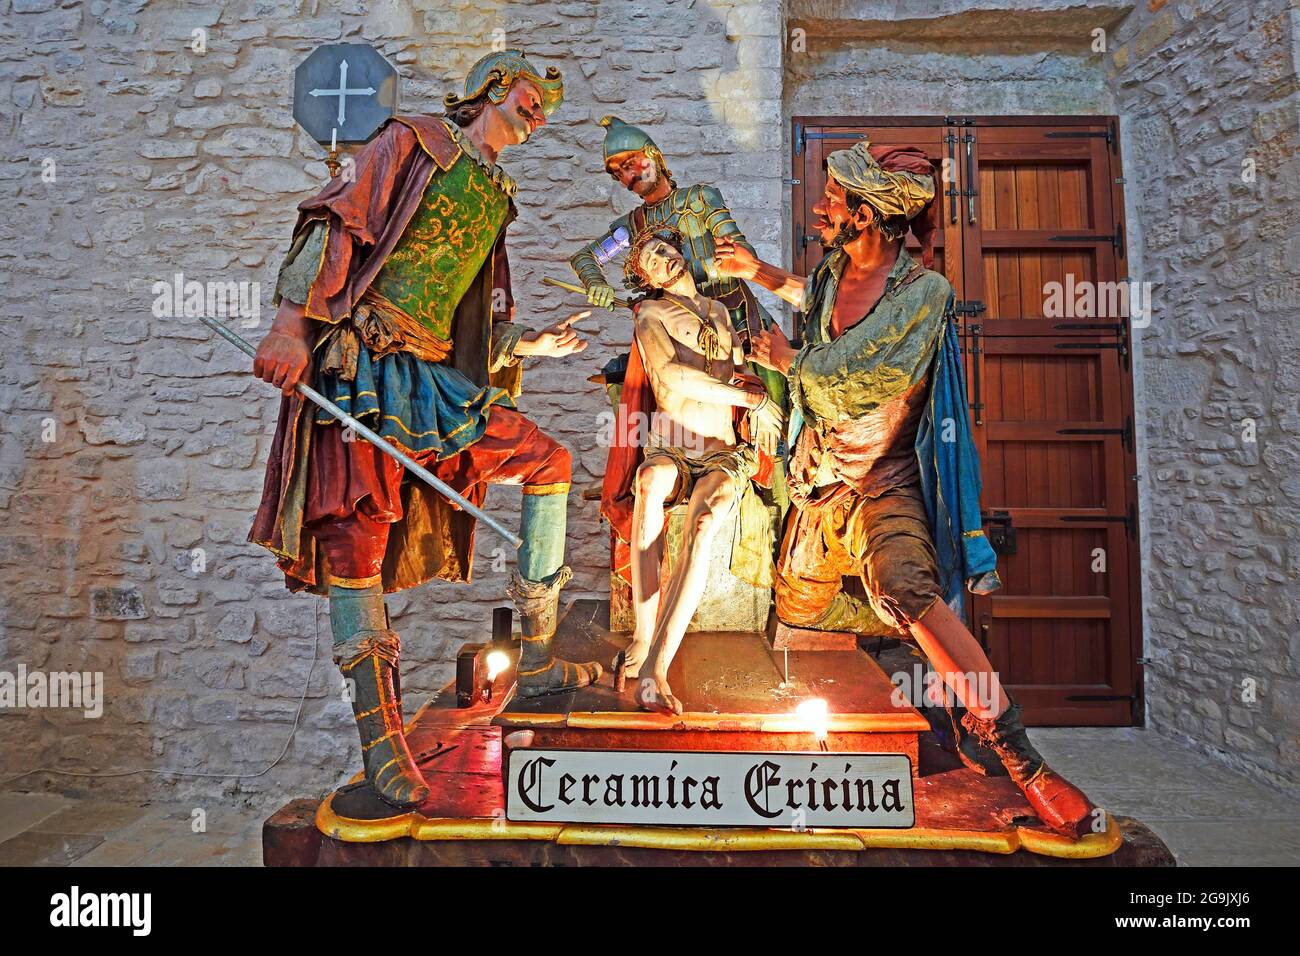 Représentation de la Crucifixion de Jésus, céramique, XVIe siècle, Chiesa San Giuliano, village de montagne d'Erice, Sicile, Italie Banque D'Images